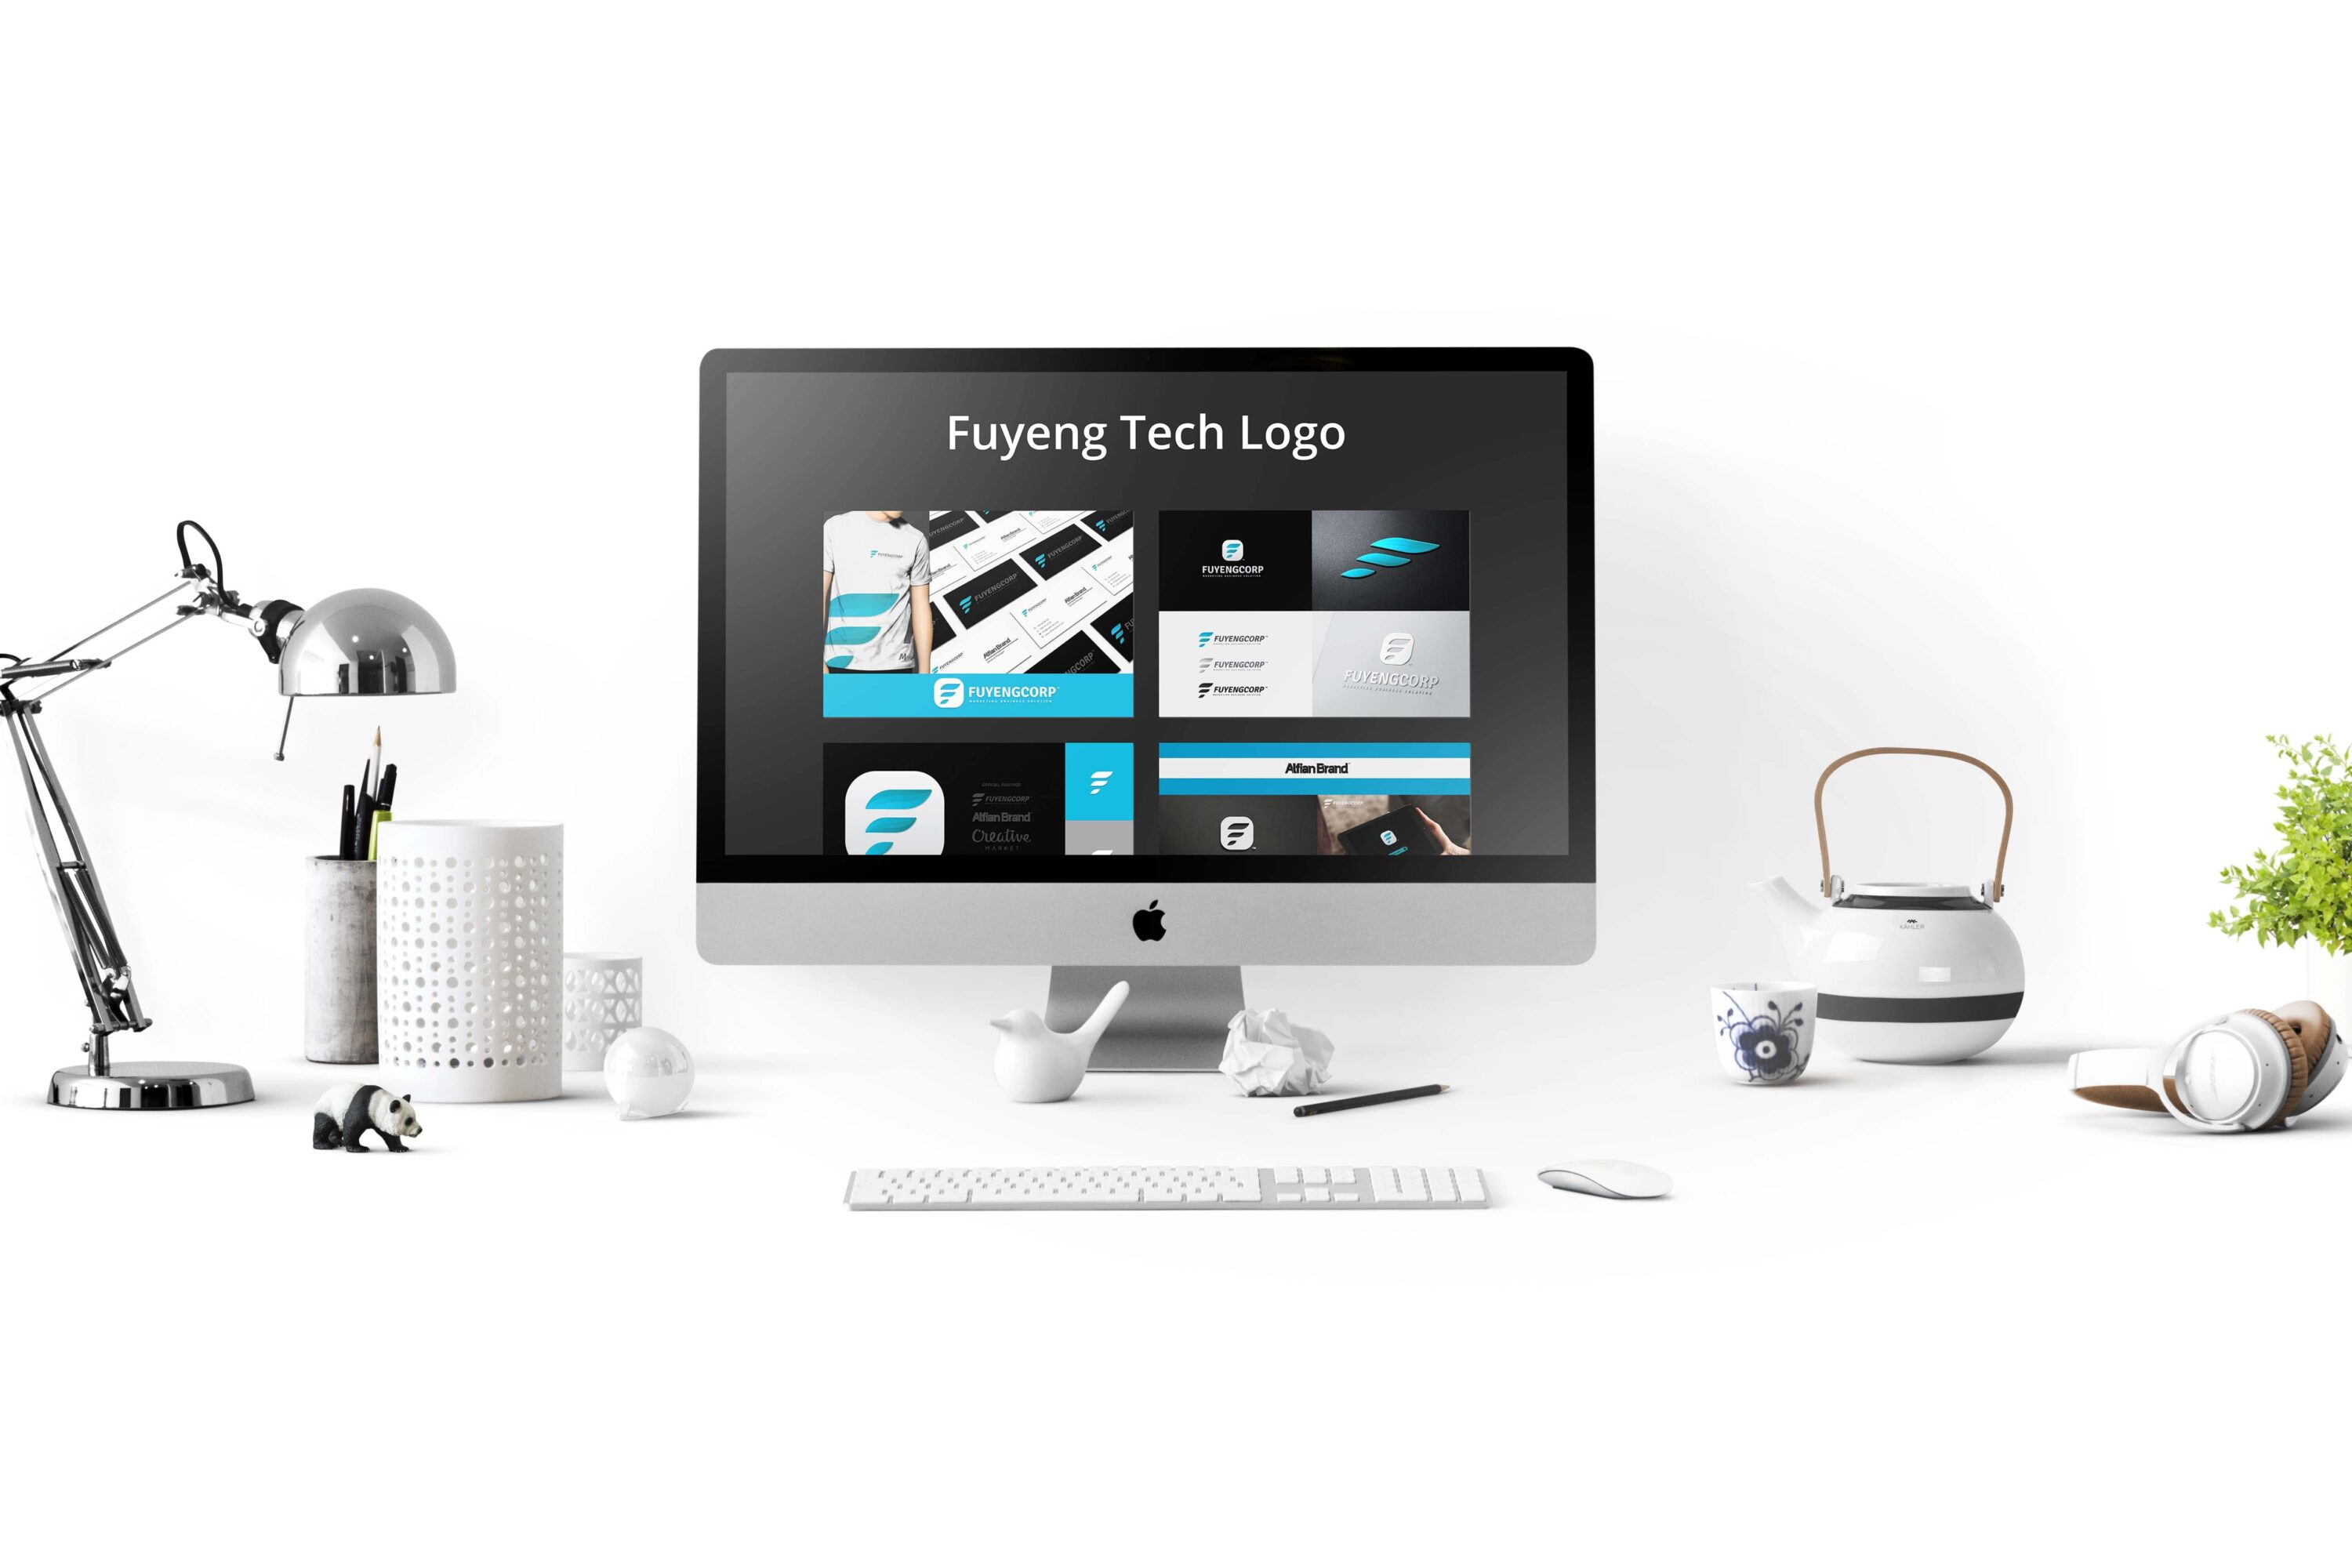 3D Fuyeng Tech Logo desktop preview.